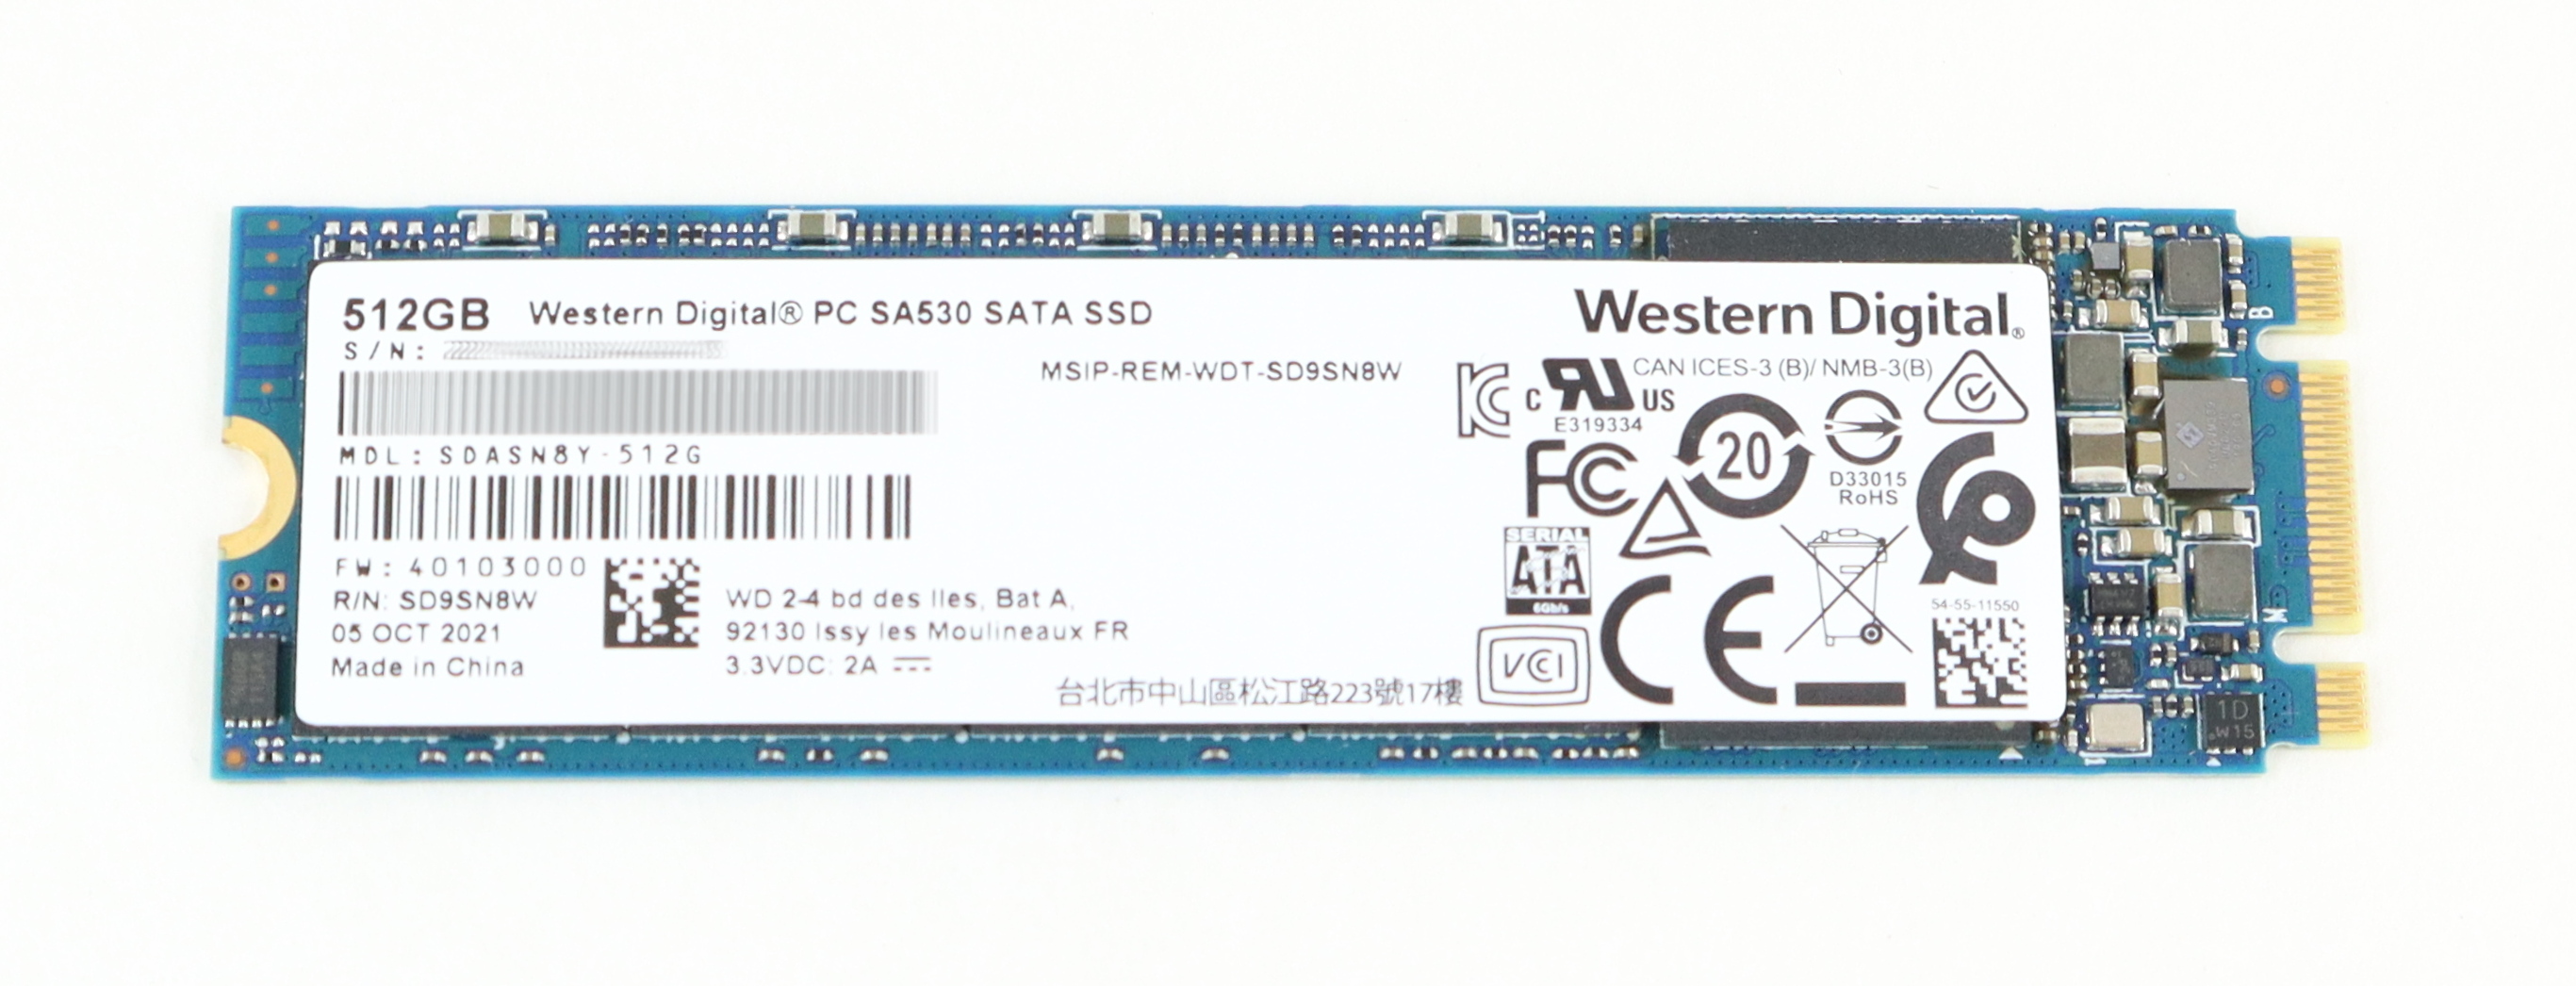 SANDISK 512GB SATA 2280 M.2 SSD Drive